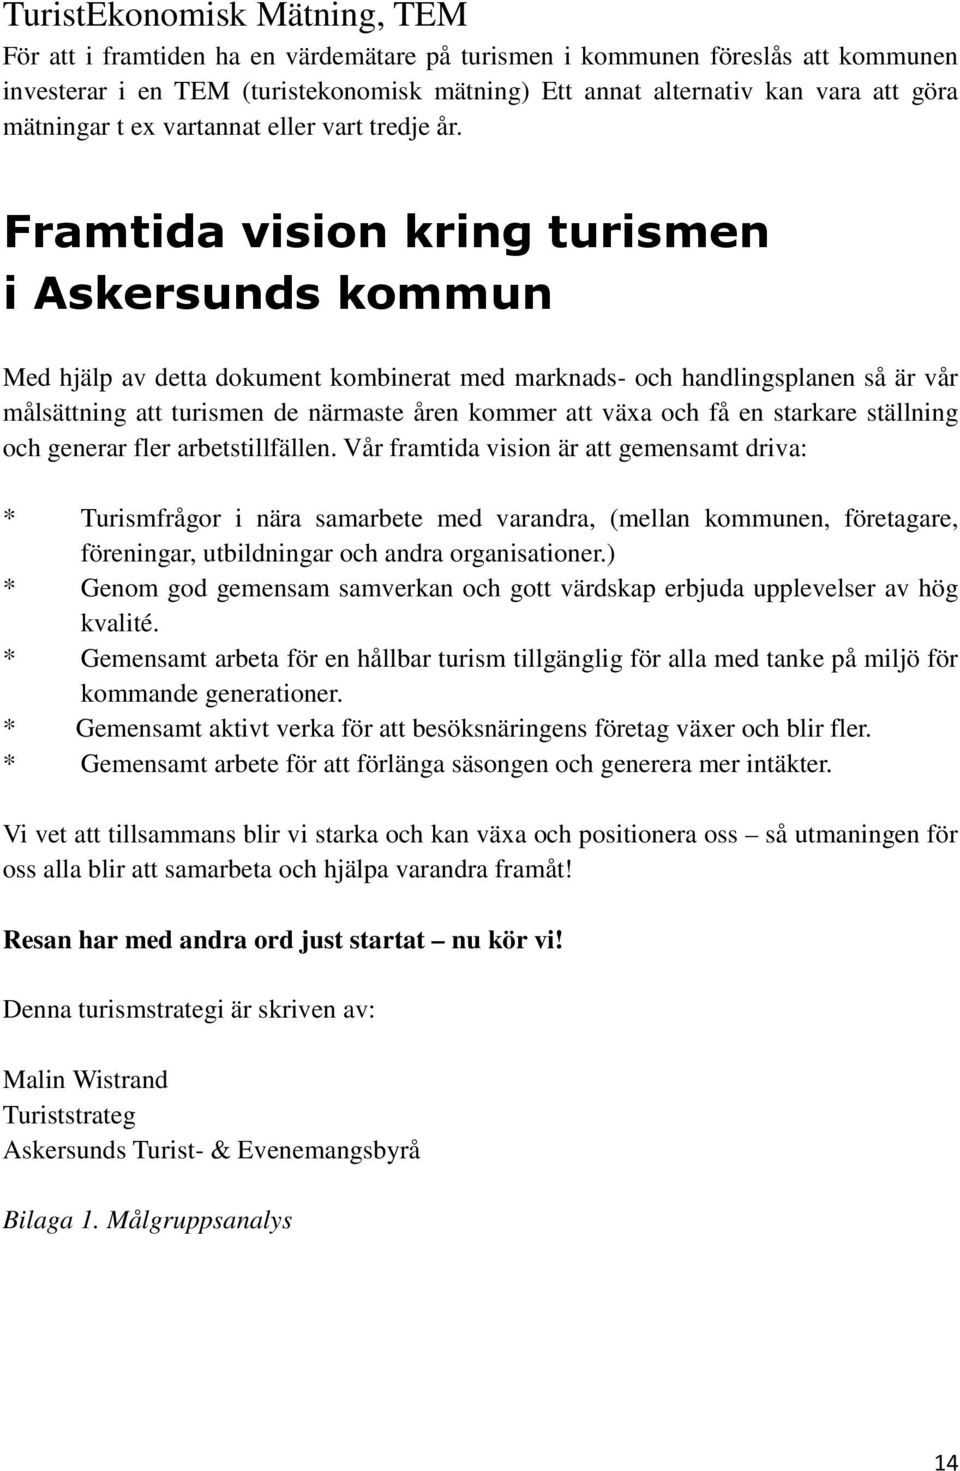 Framtida vision kring turismen i Askersunds kommun Med hjälp av detta dokument kombinerat med marknads- och handlingsplanen så är vår målsättning att turismen de närmaste åren kommer att växa och få